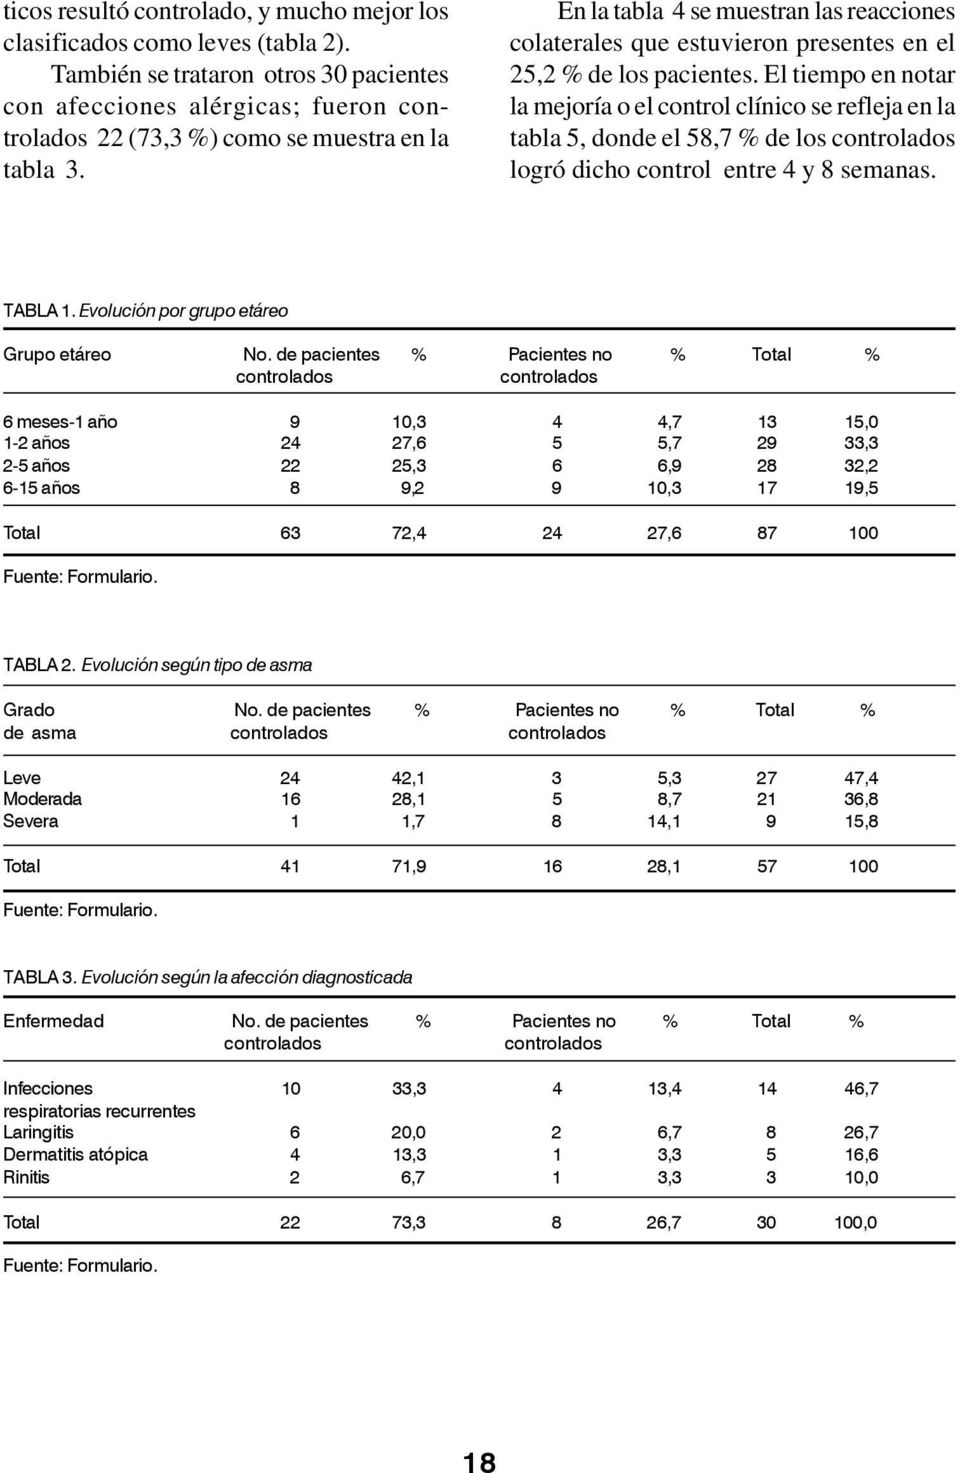 En la tabla 4 se muestran las reacciones colaterales que estuvieron presentes en el 25,2 % de los pacientes.